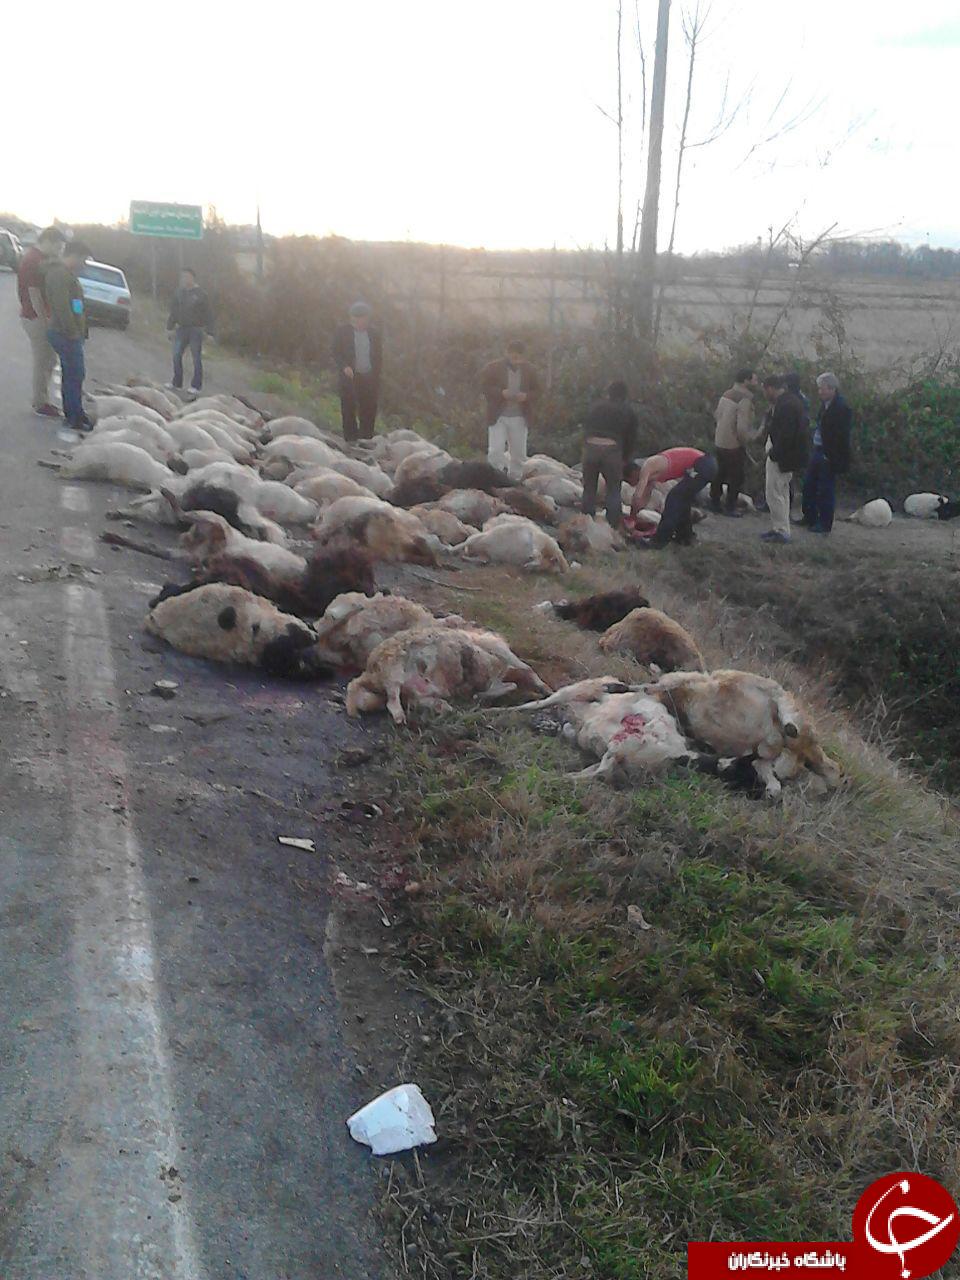 تلف شدن 65 رأس گوسفند در تصادف با اتوبوس + عکس